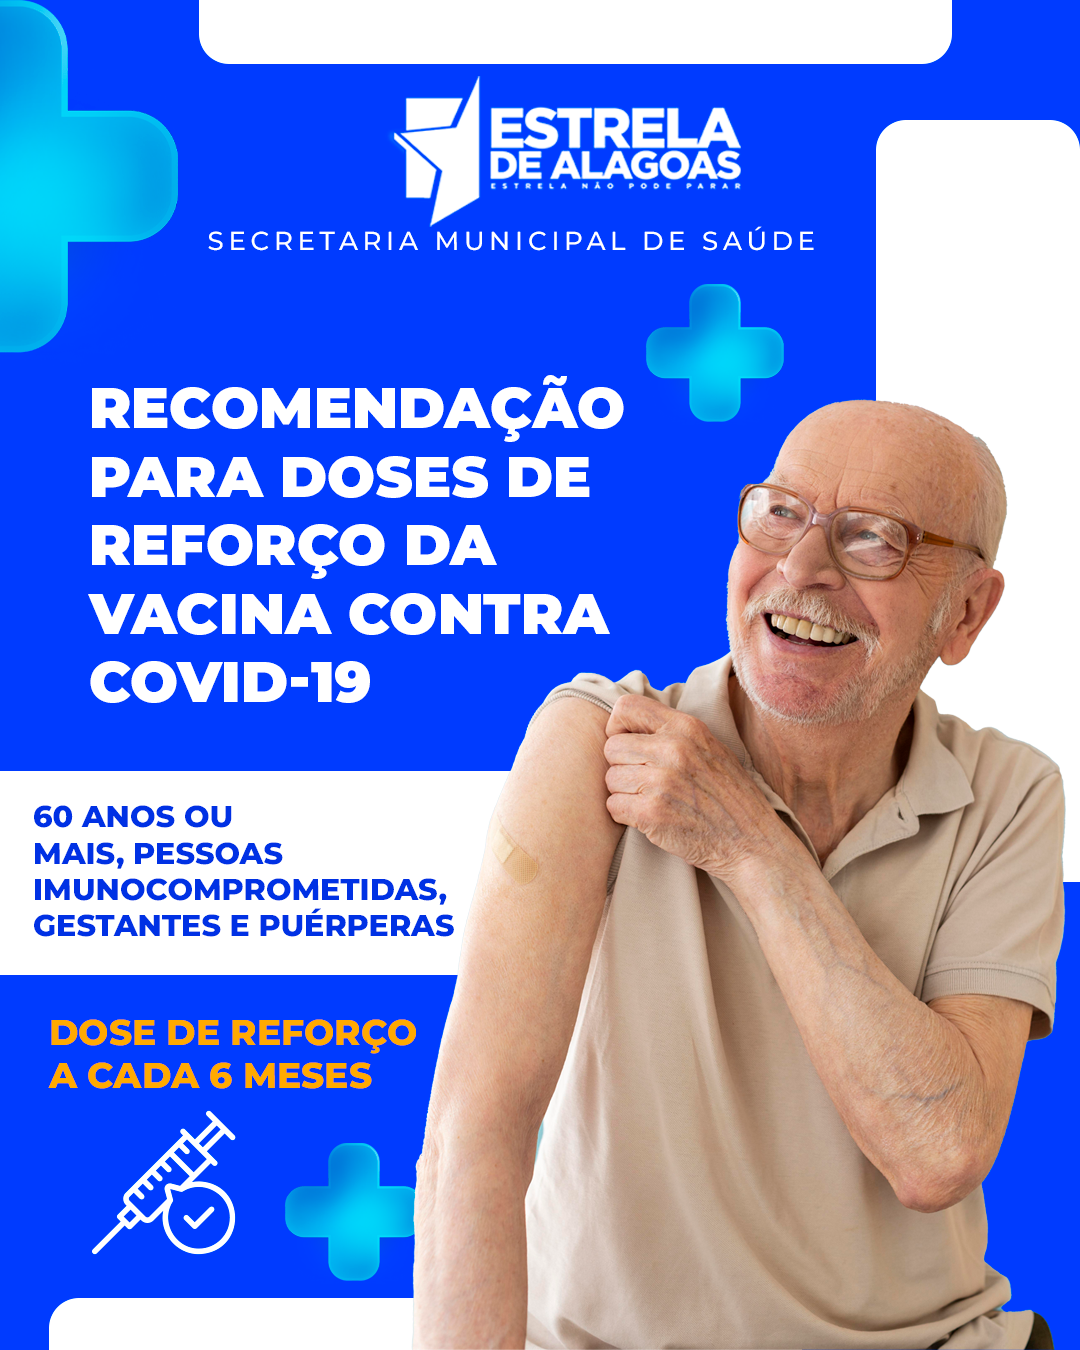 Secretaria de Saúde orienta sobre doses de reforço da COVID-19 em Estrela de Alagoas